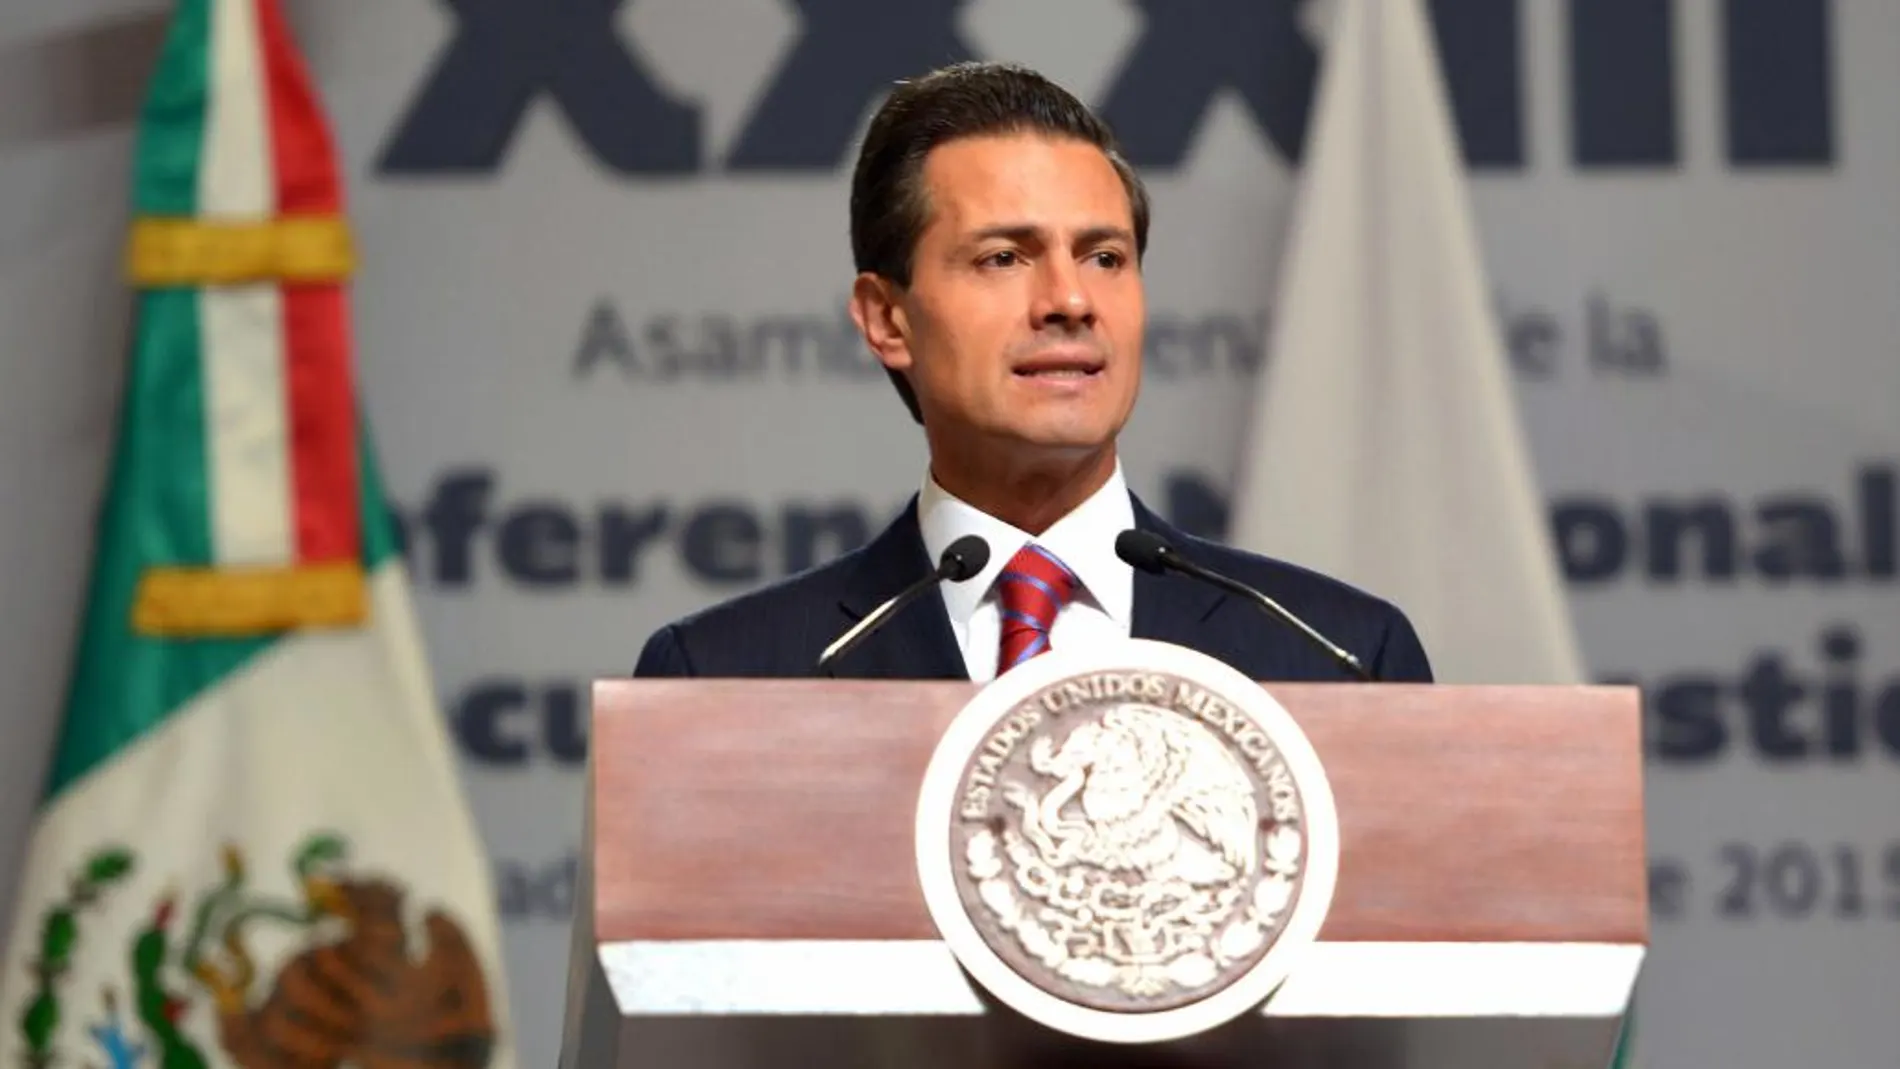 Fotografía cedida por la Presidencia de México que muestra al mandatario Enrique Peña Nieto durante un acto público el pasado miércoles 19 de agosto de 2015, en un hotel de Ciudad de México (México)